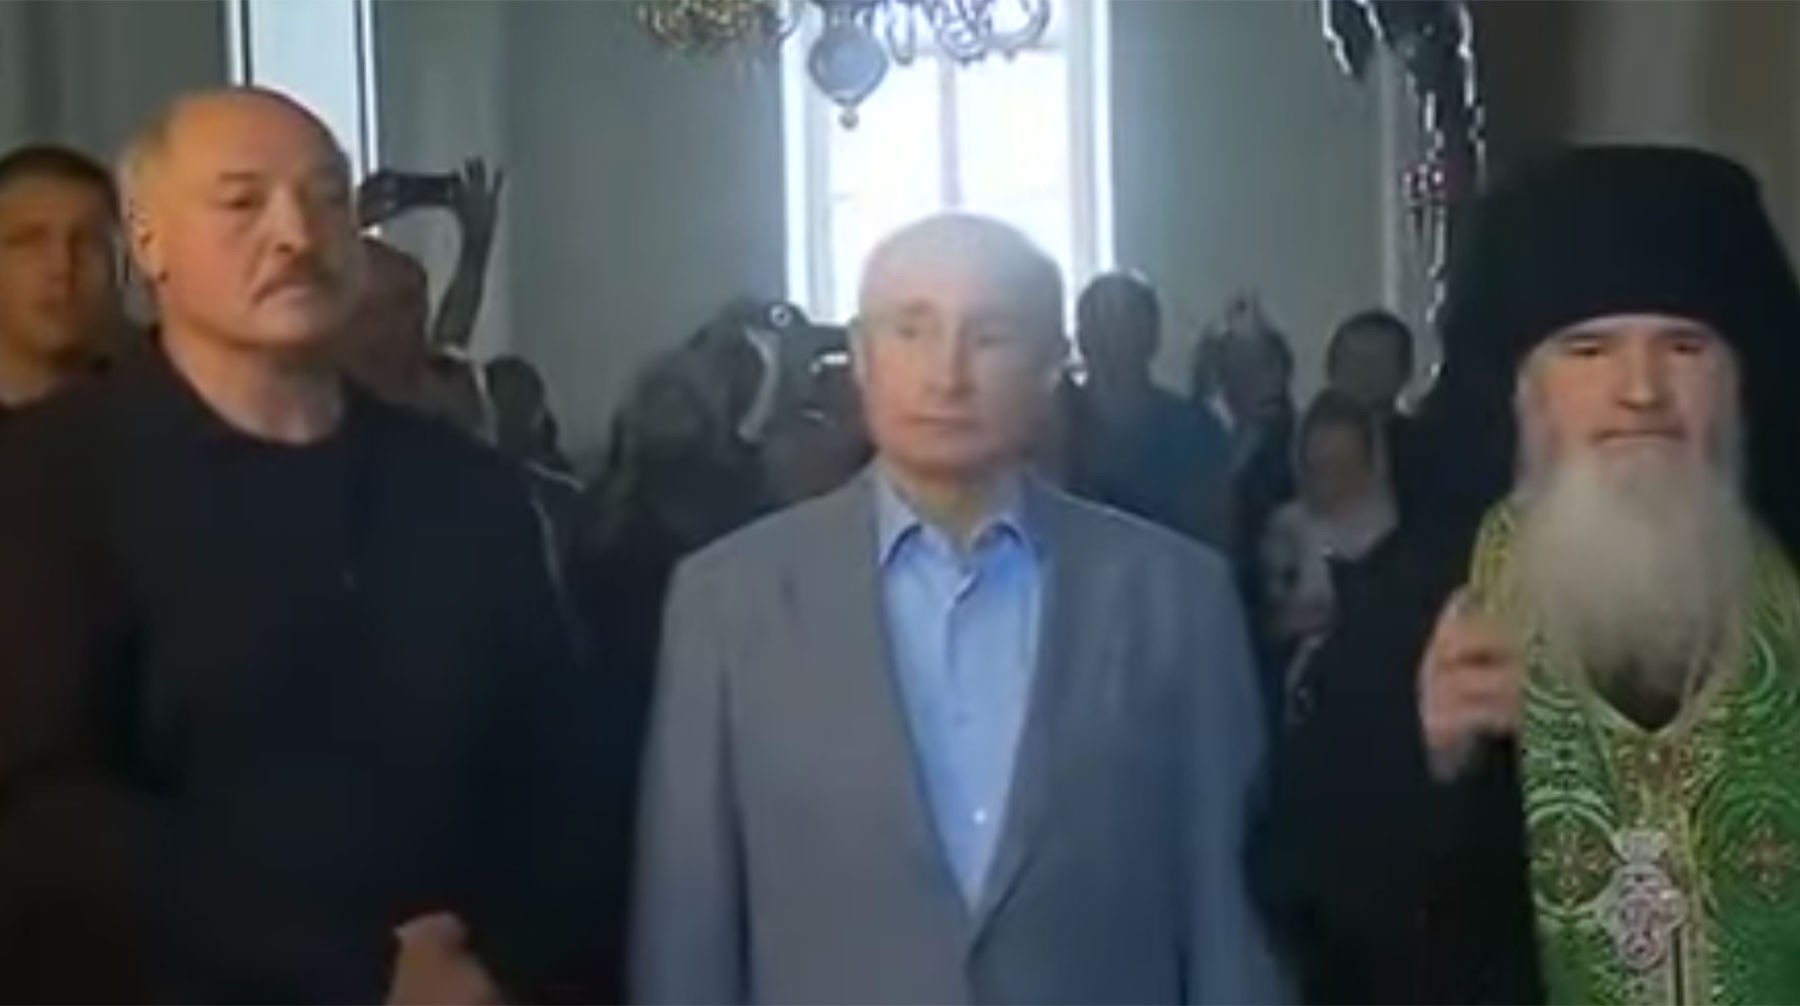 Dailystorm - Путин и Лукашенко поцеловали раку с мощами в монастыре на Валааме — видео